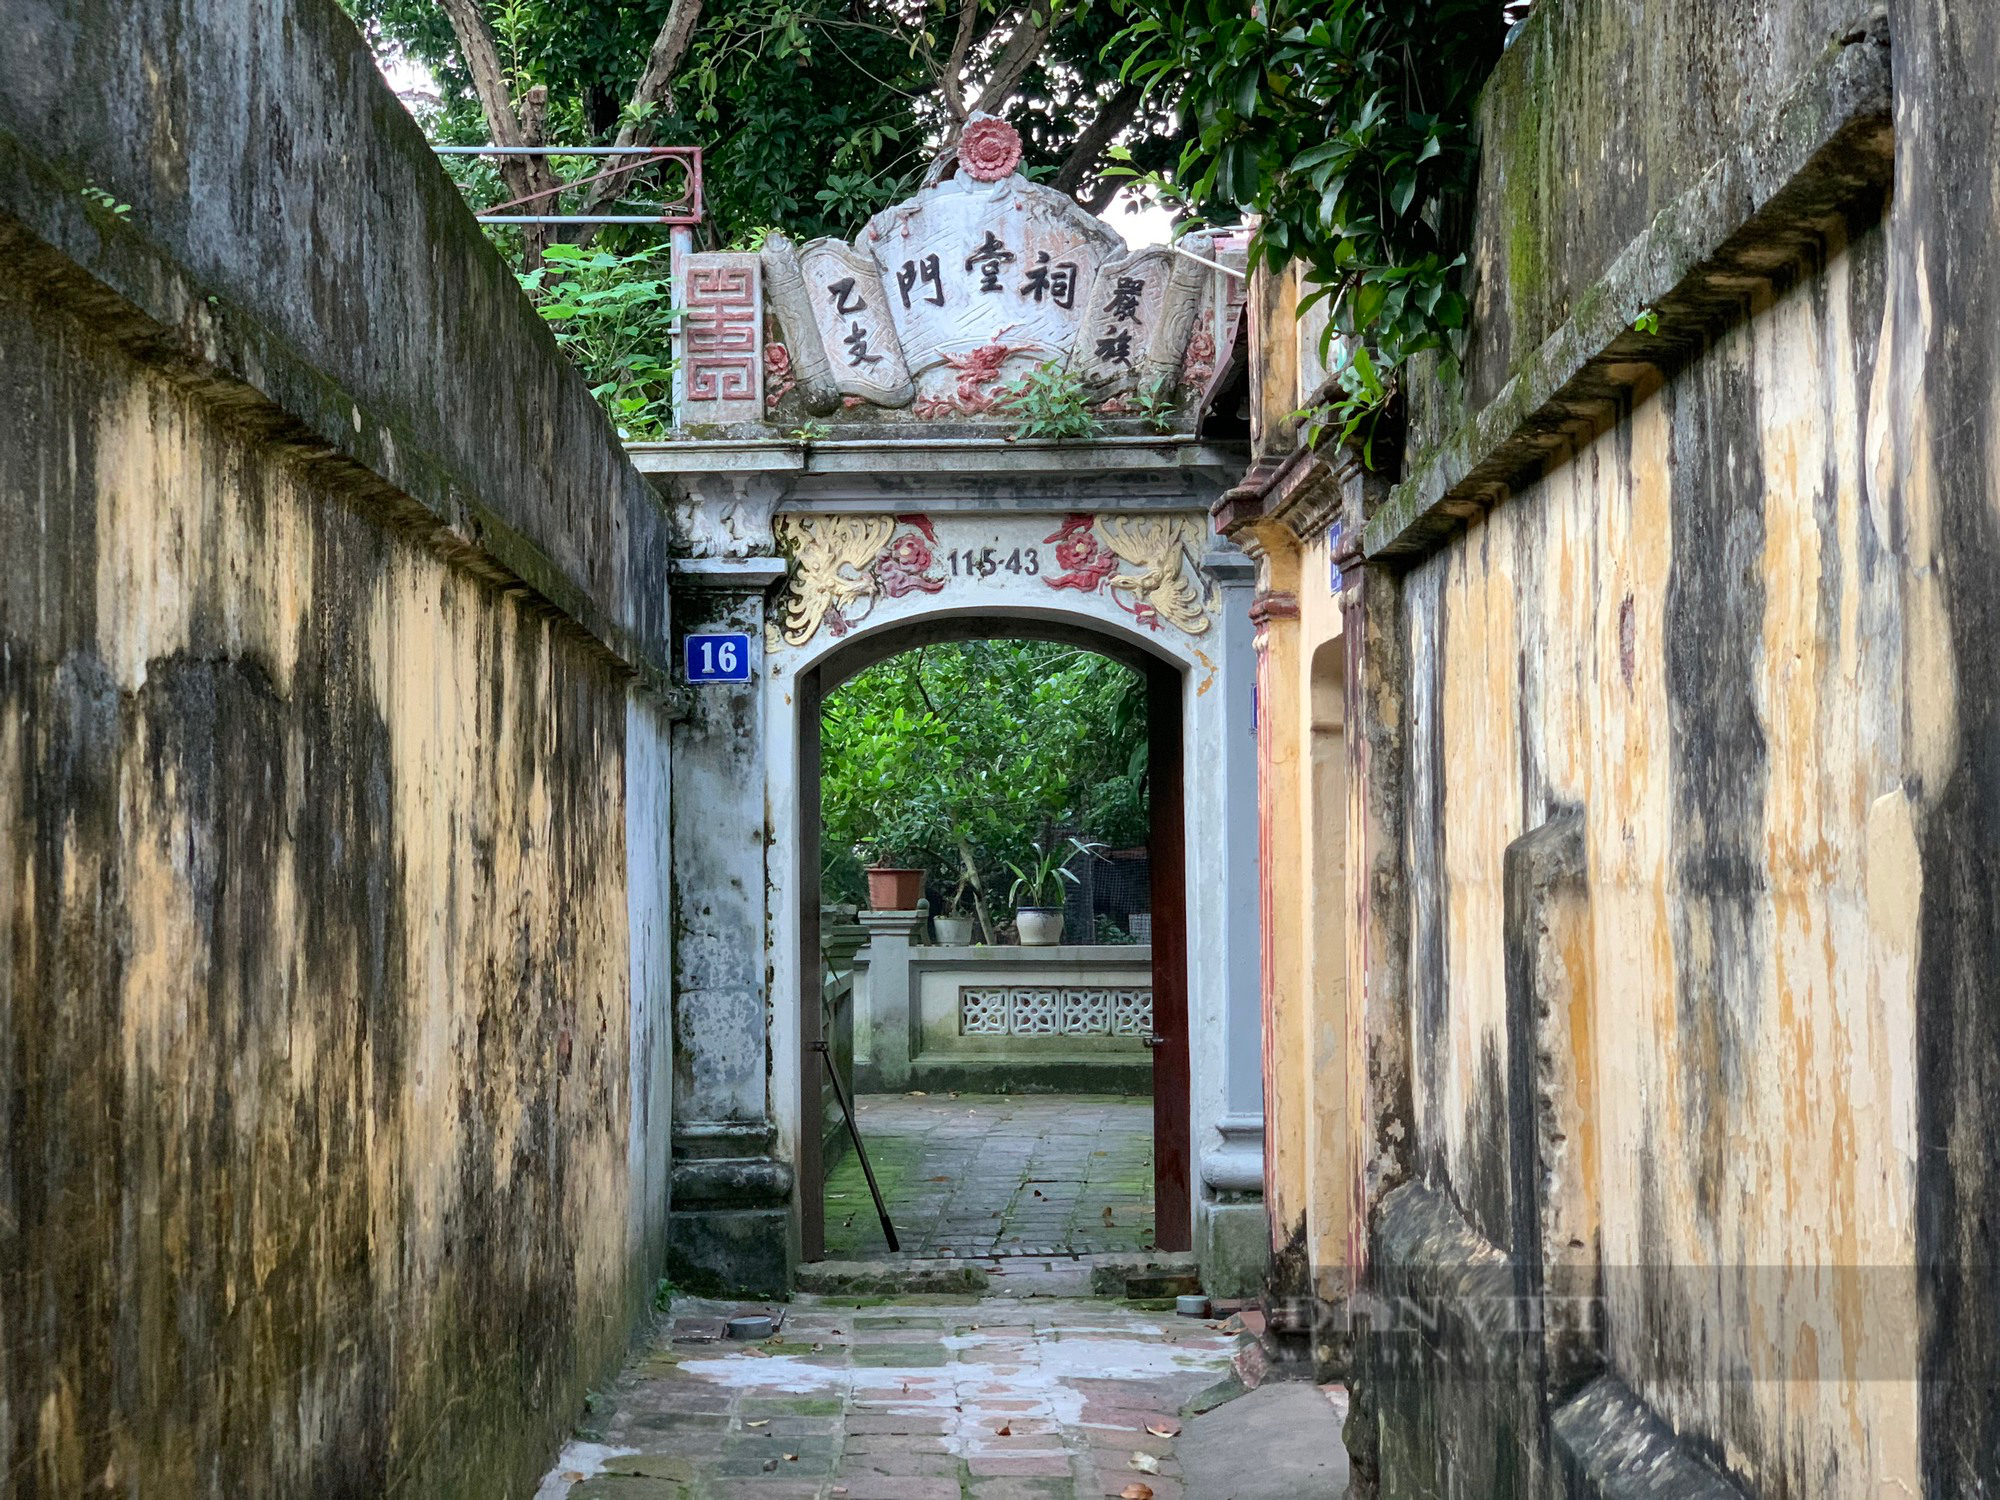 Chiêm ngưỡng nhà cổ 200 năm tuổi xuất hiện trong hàng loạt bộ phim truyền hình Việt Nam - Ảnh 2.